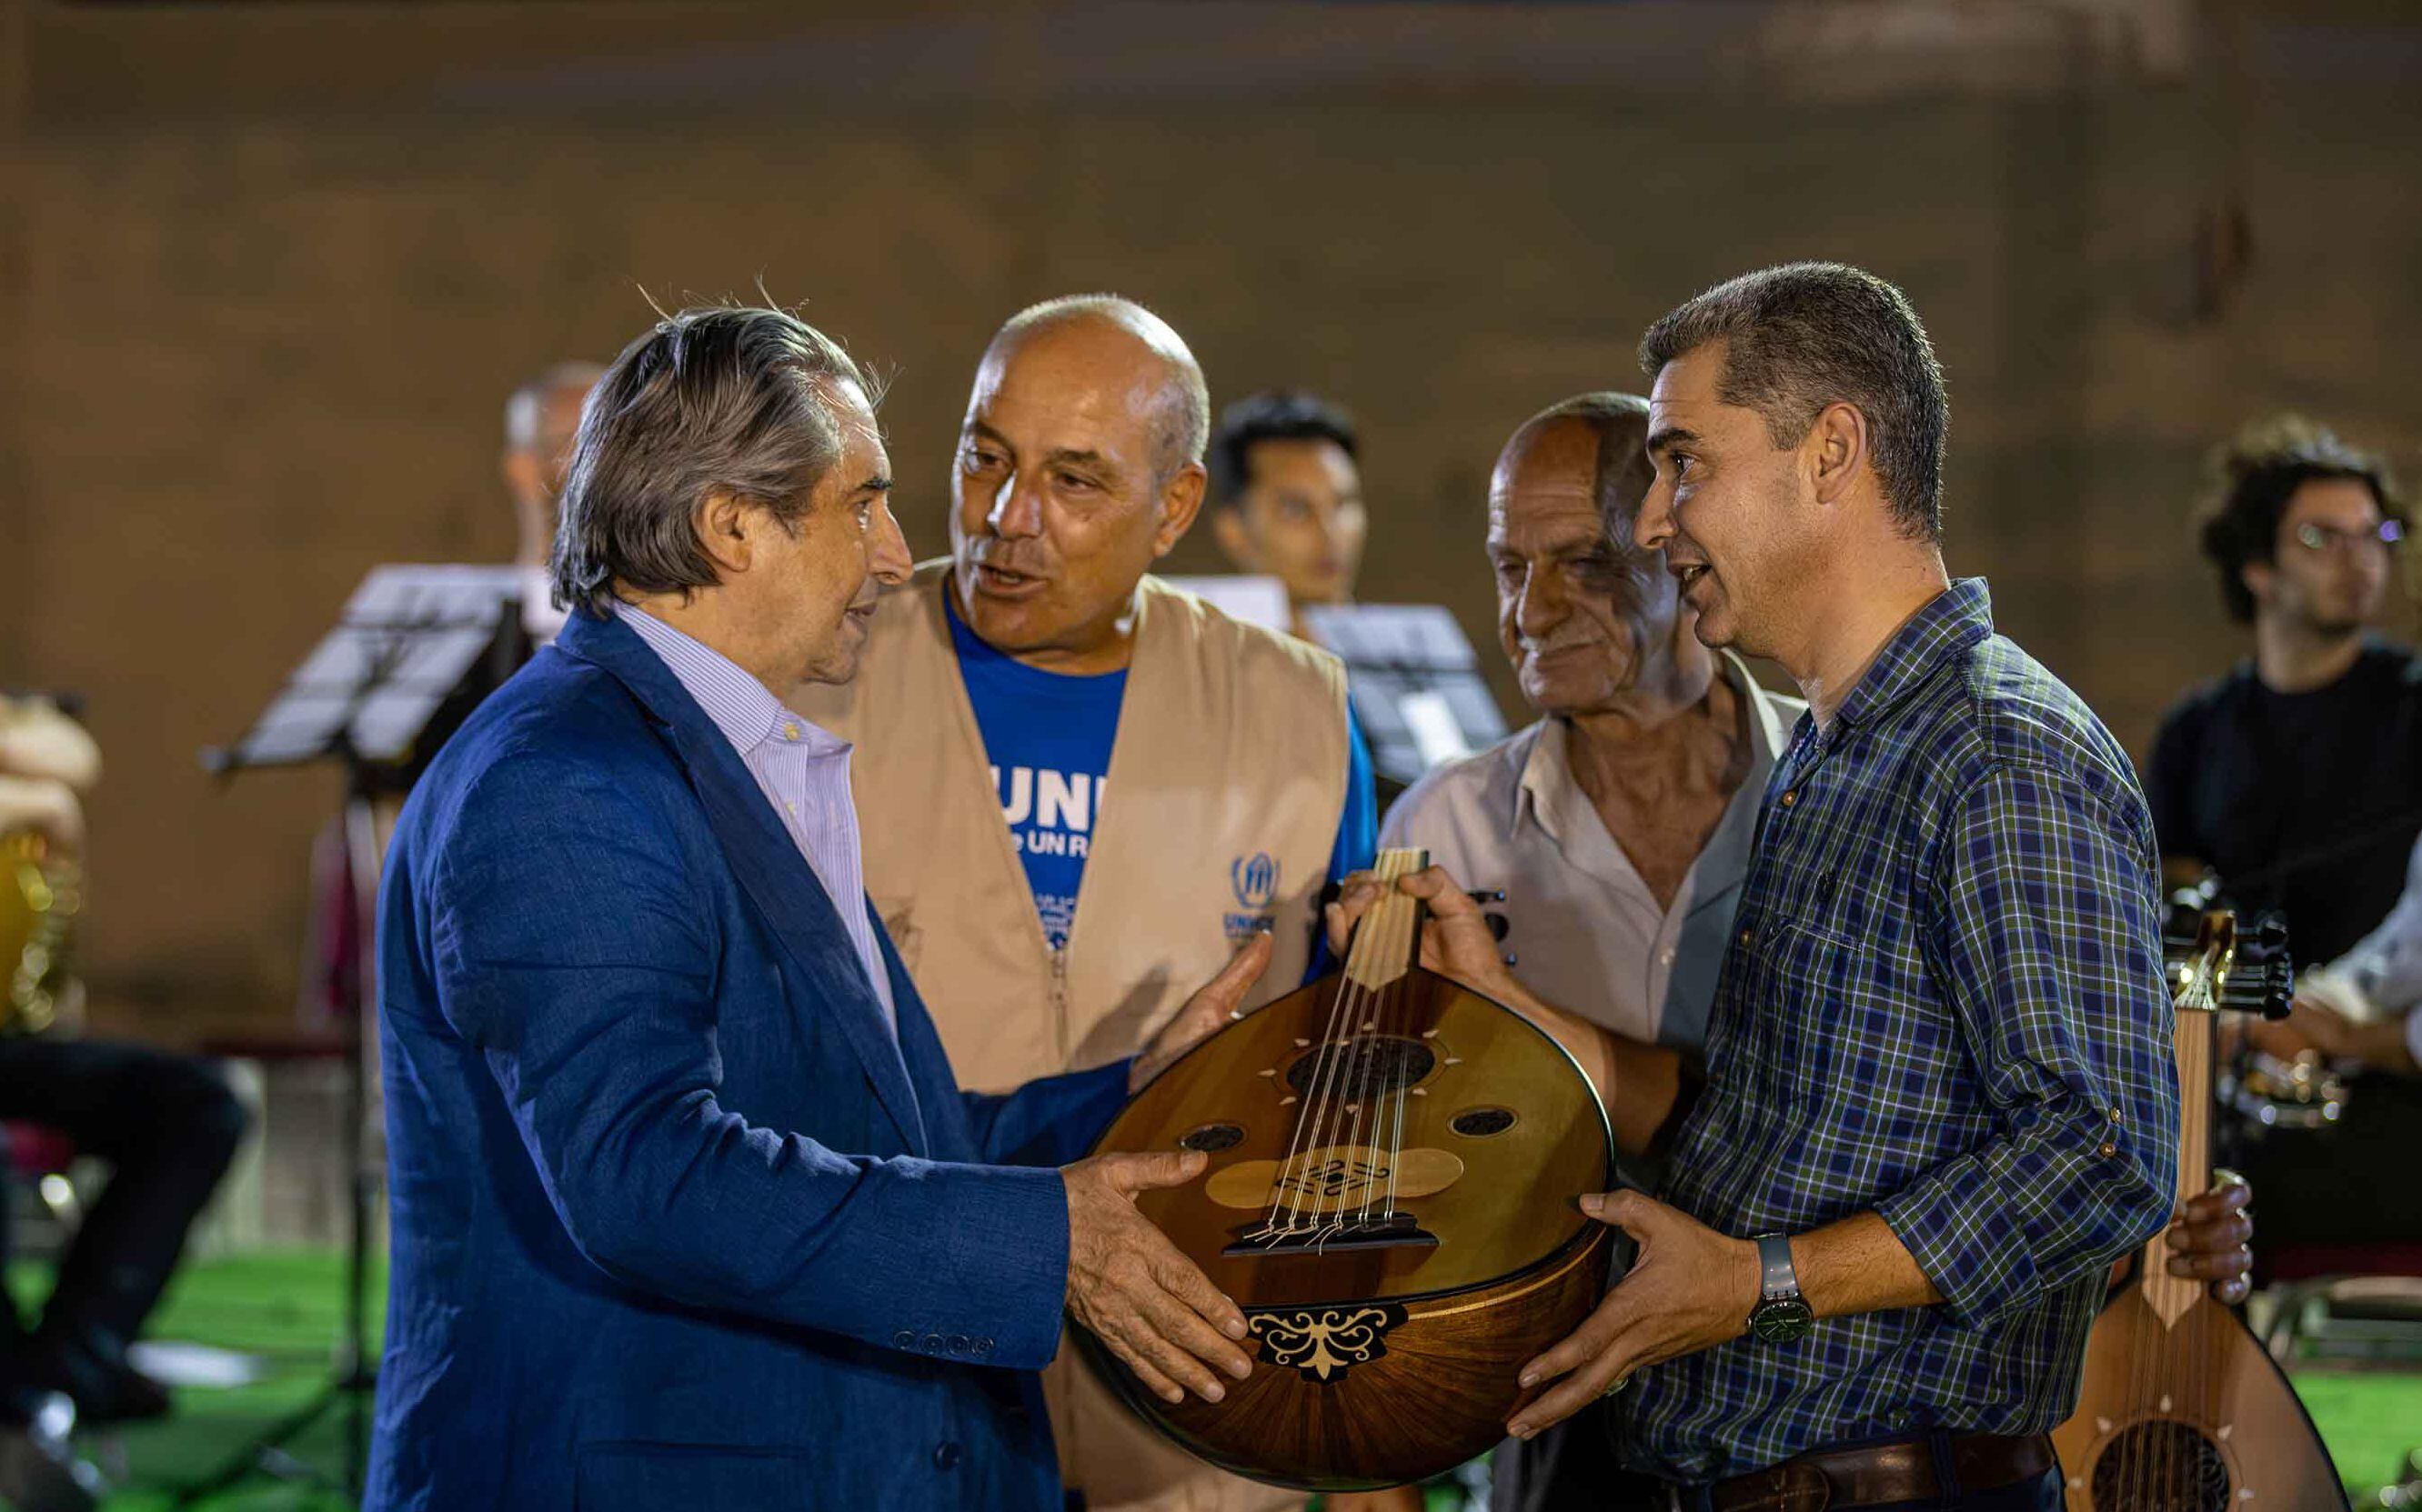 Riccardo Muti haciendo entrega de un nuevo 'ud' a uno de los músicos sirios refugiado, el pasado sábado, en el campamento de Zaatari.